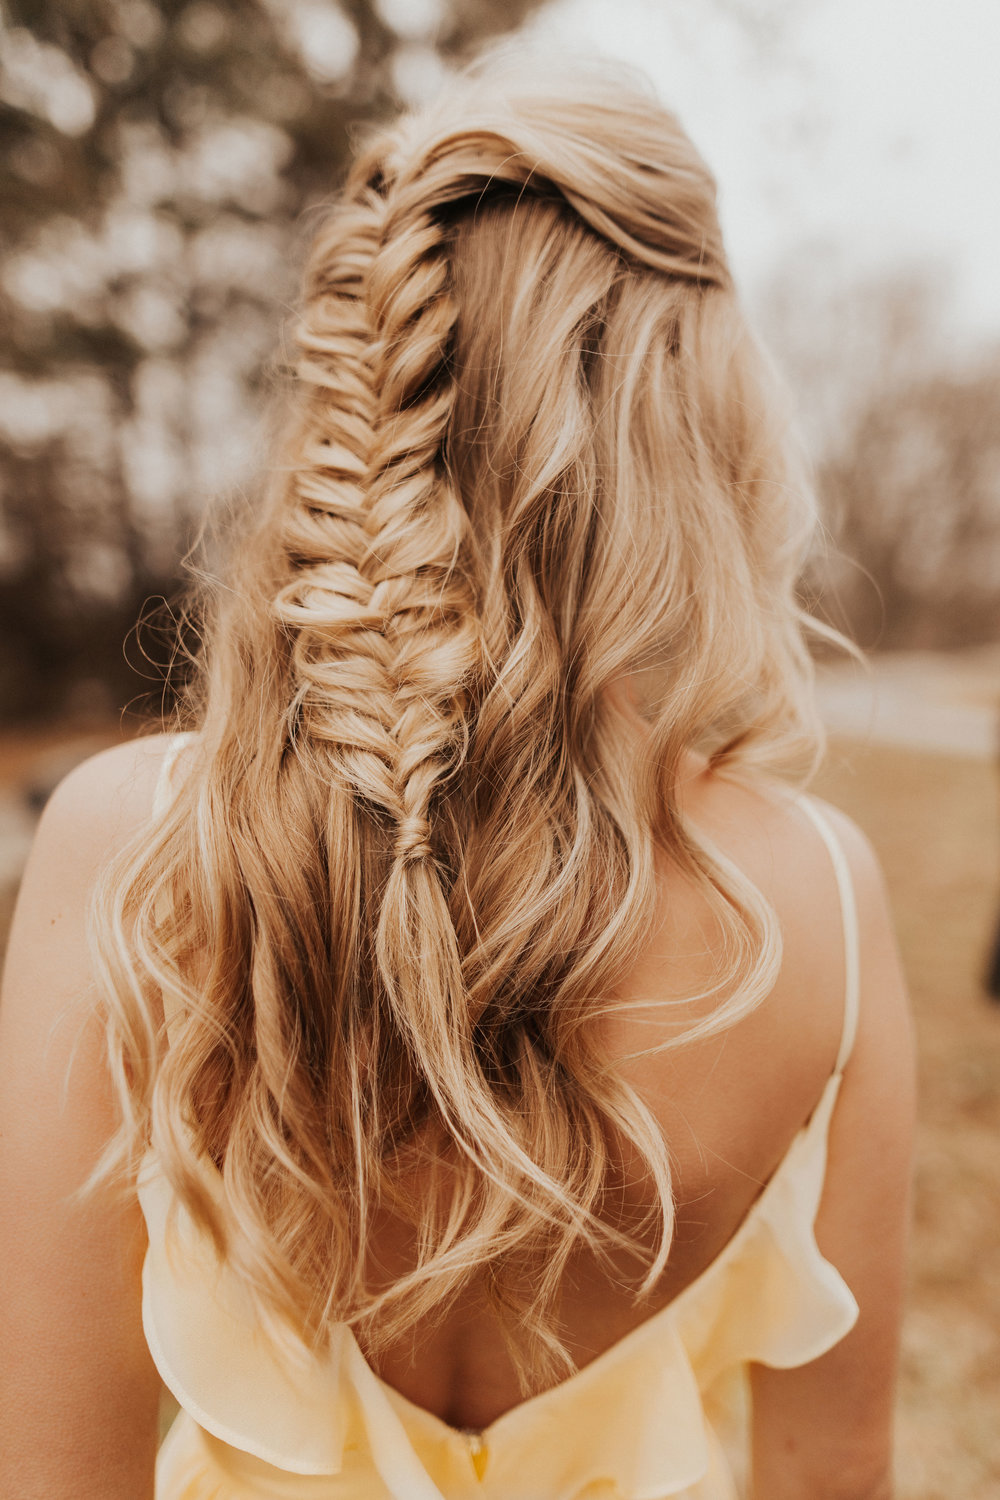 Bridesmaids braided hair